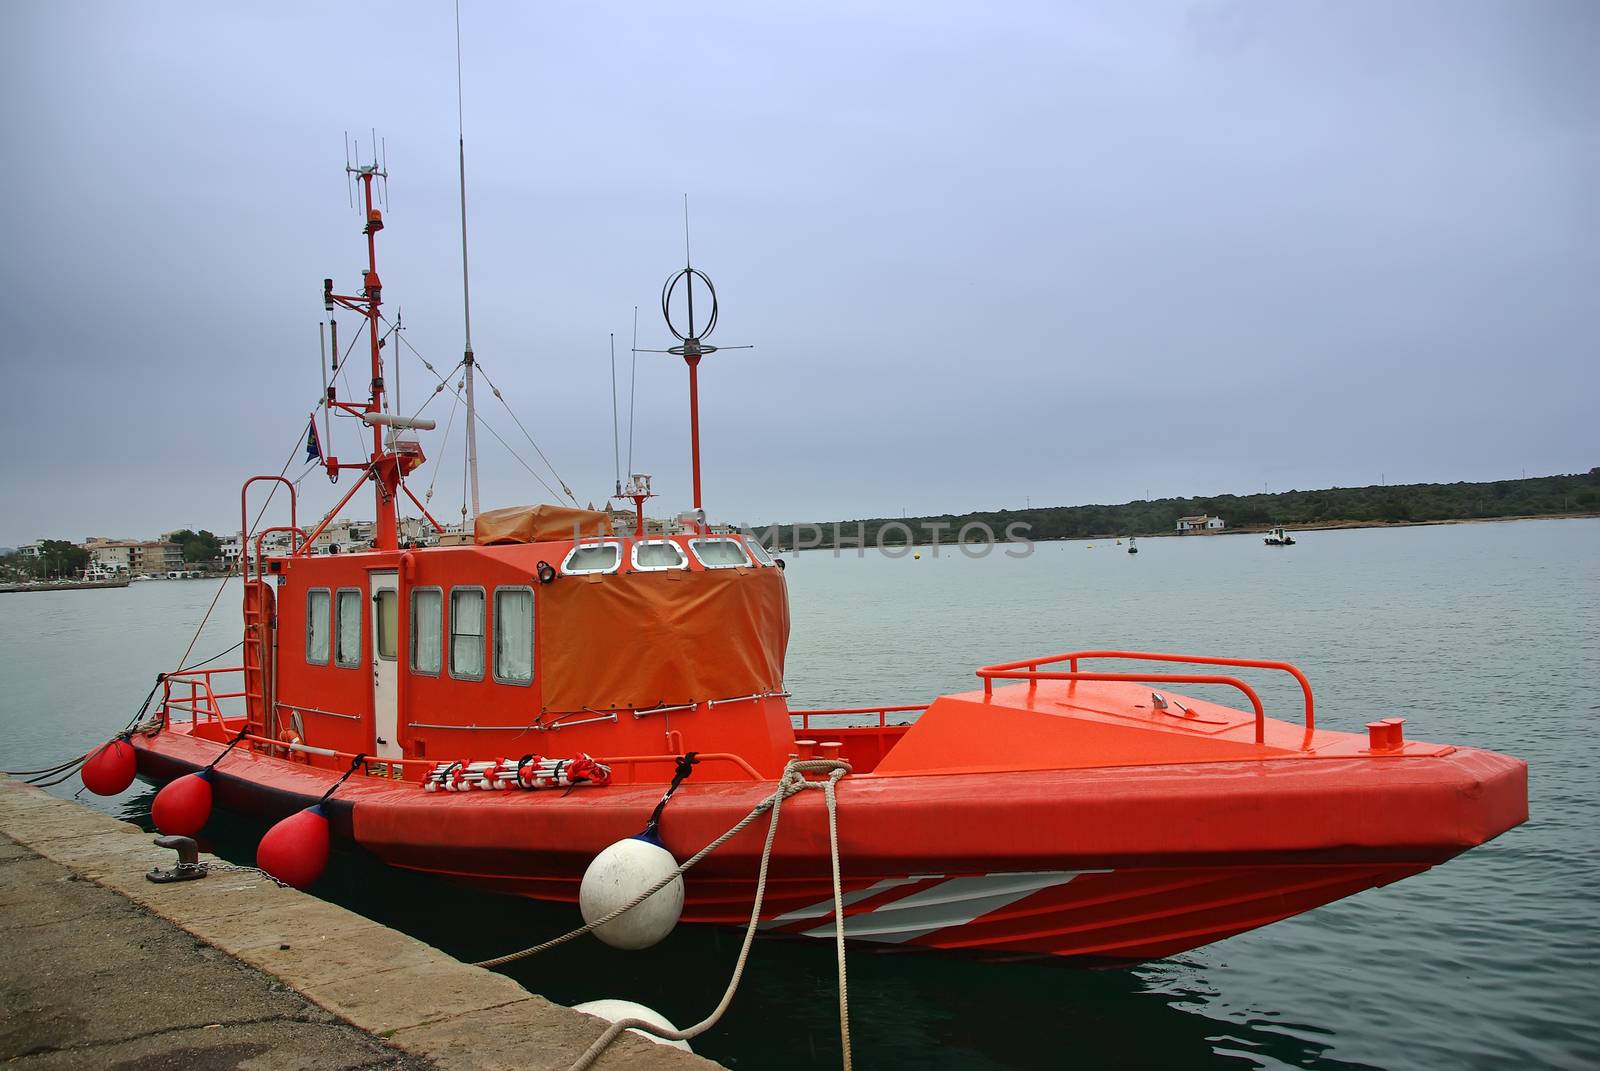 Specialized boat for sea rescue in the Mediterranean Sea